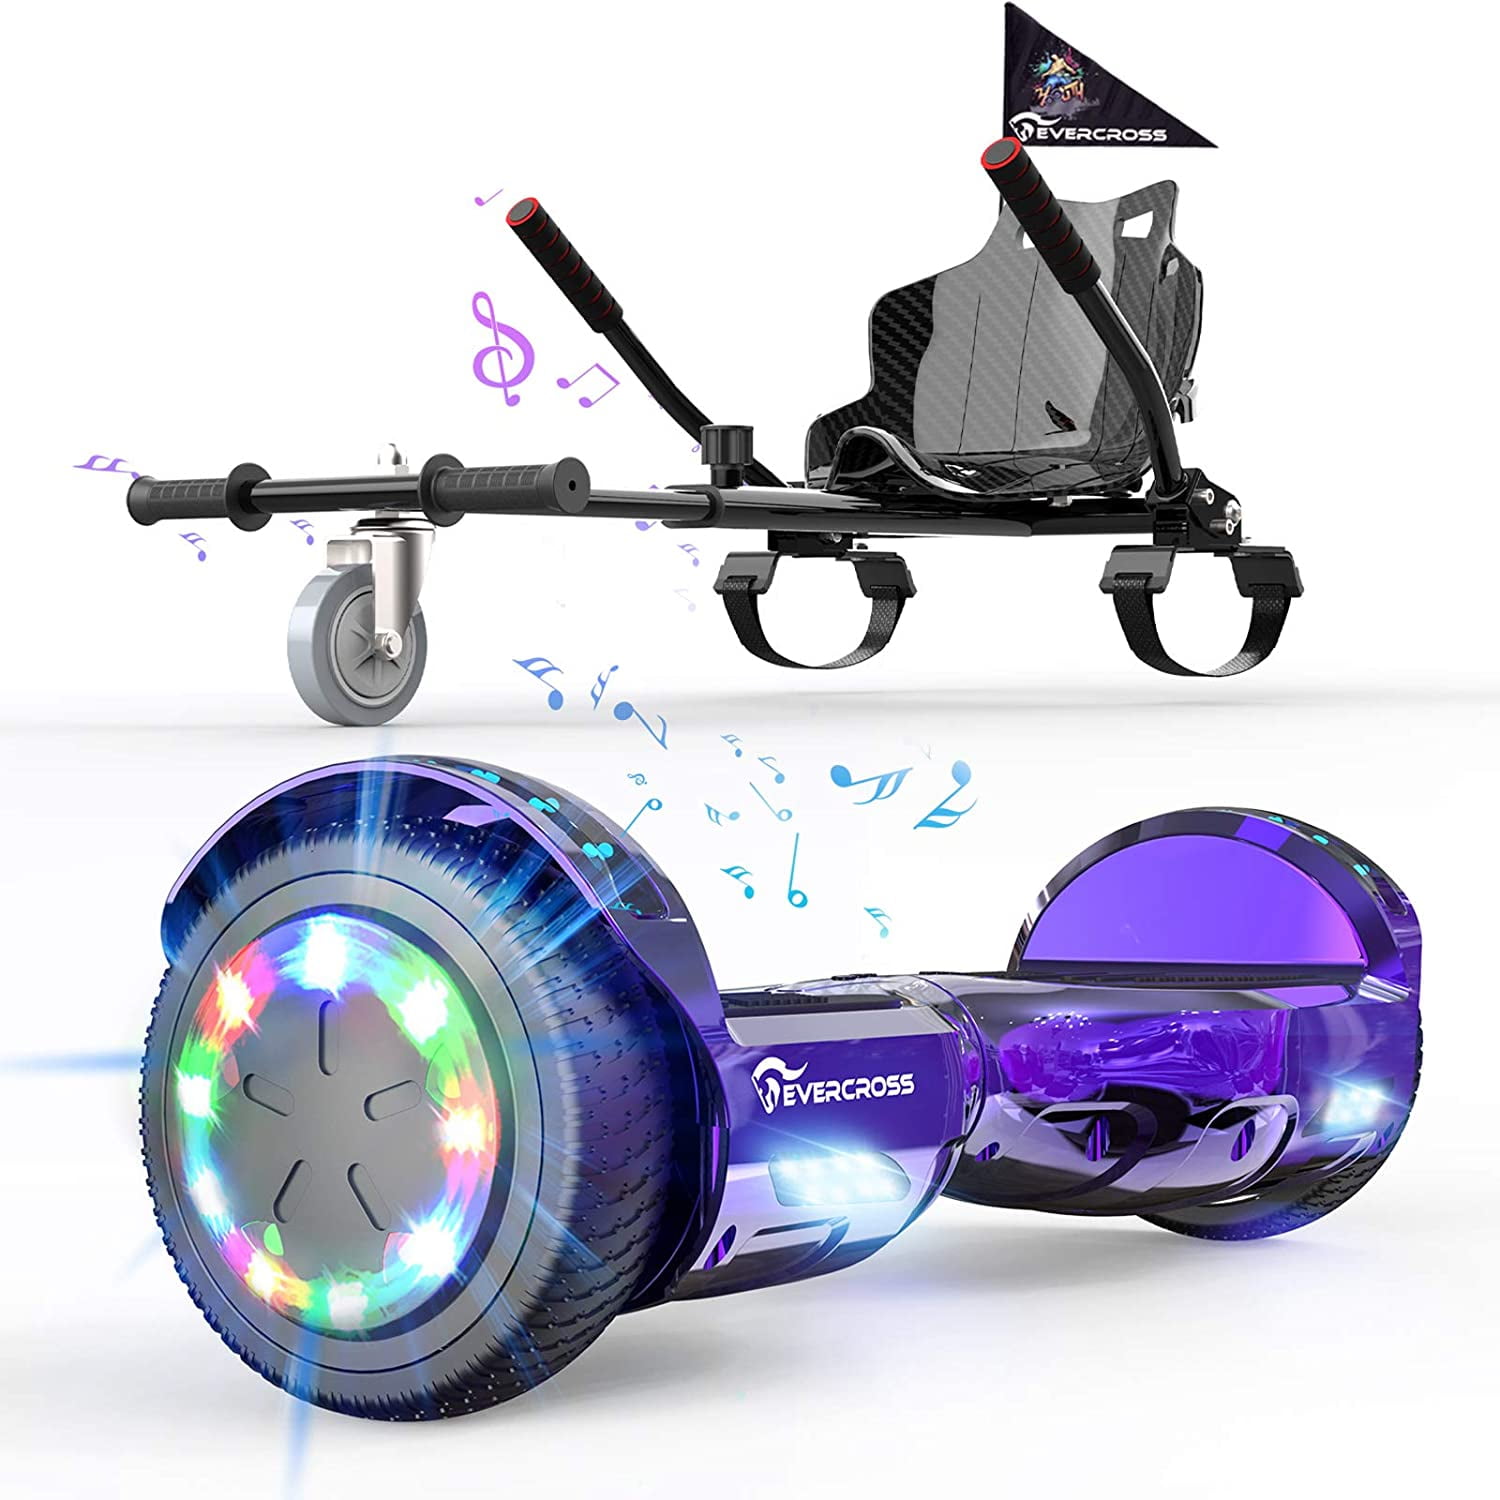 UK Premium Hoverkart Go Kart For Segway Balancing Board Hoverboard Scooter Black 